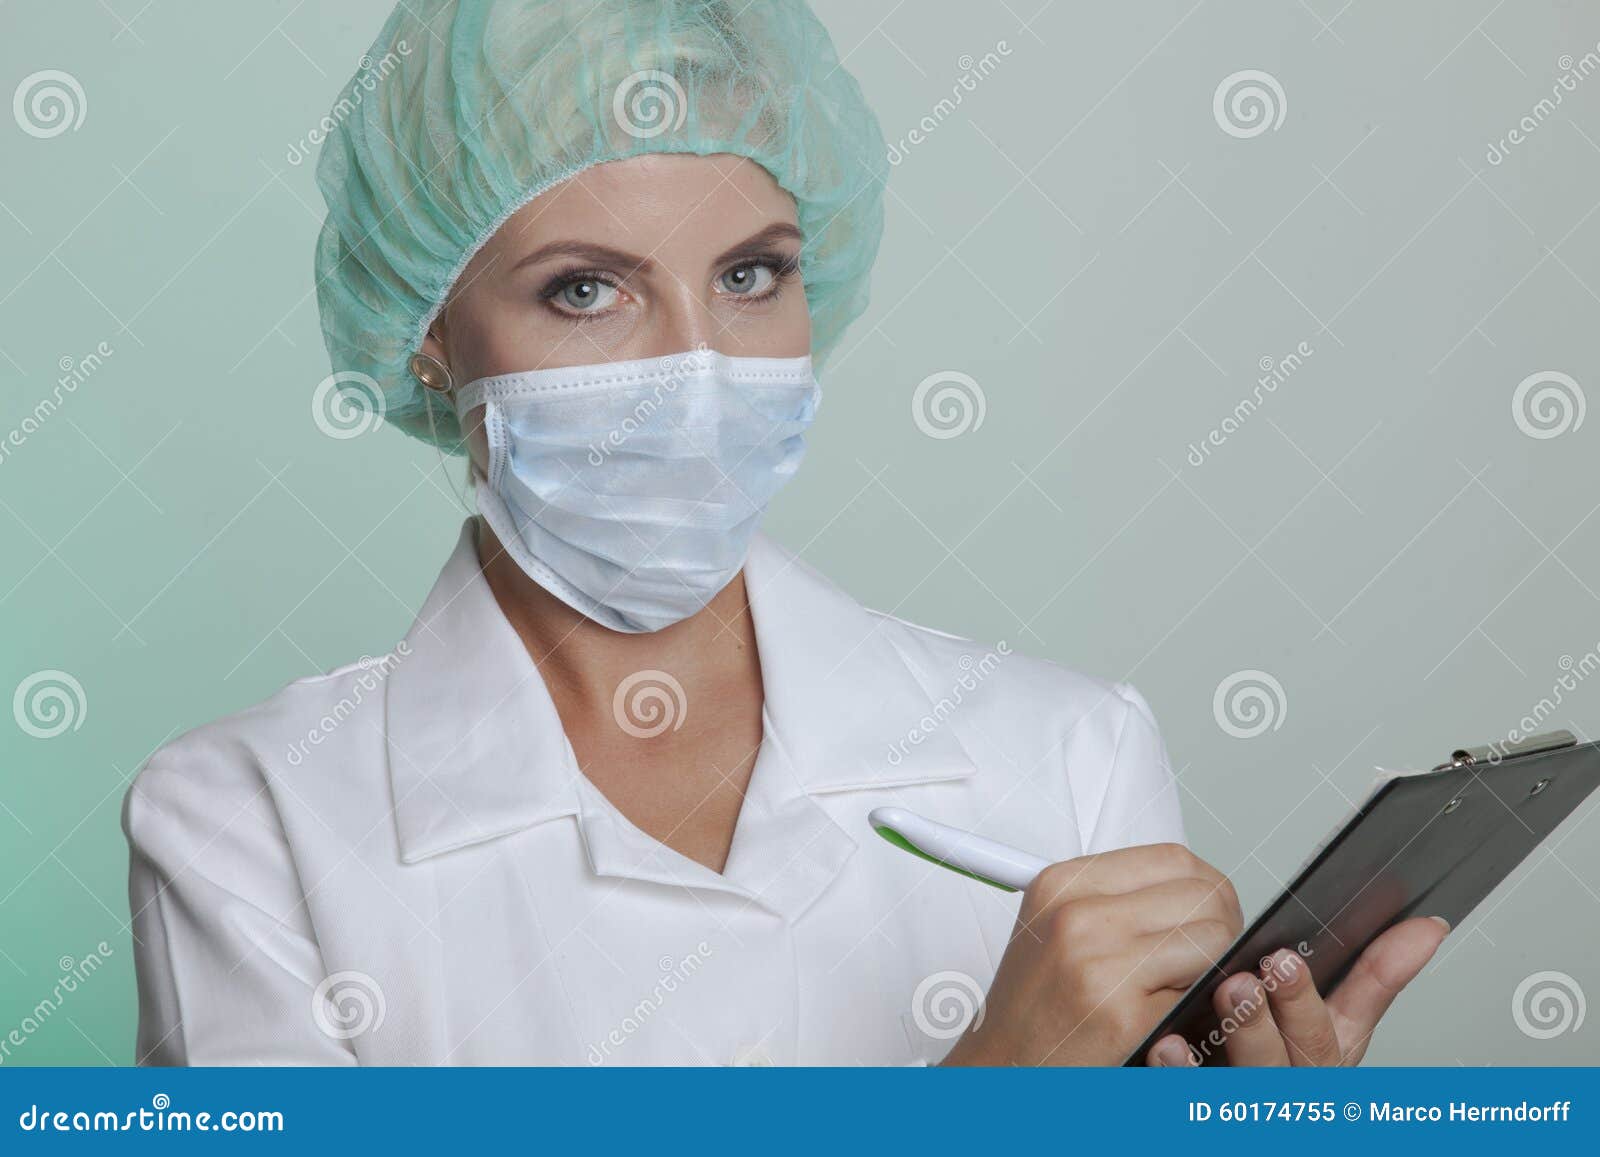 医疗护士或牙医助理 库存照片. 图片 包括有 专门技术, 一个, 诊所, 表面, 蓝色, 女性, 头发, 防护 - 53694648